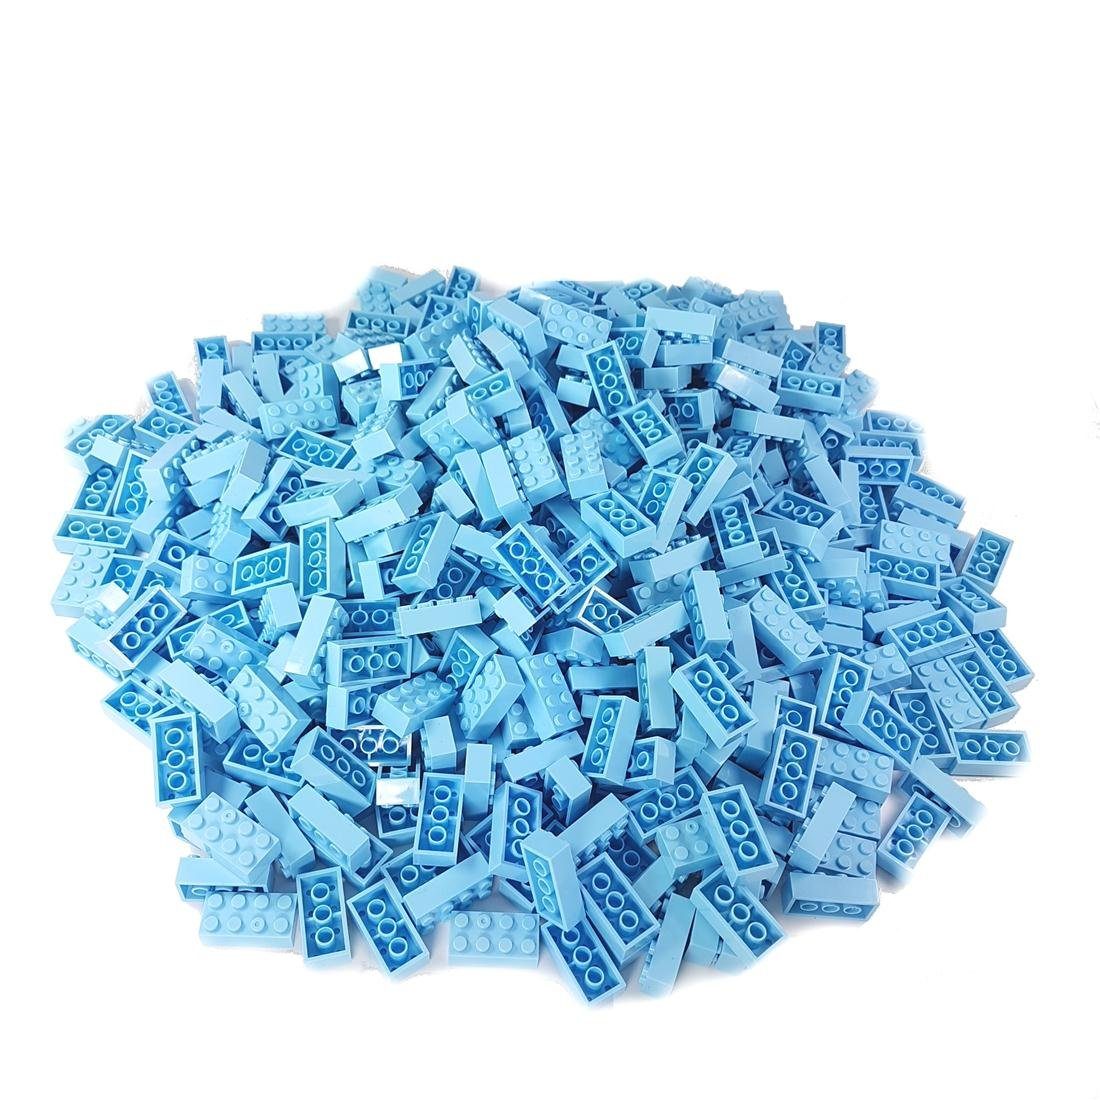 Herstellern - Katara Box, zu Kompatibel Box-Set Konstruktionsspielsteine Bausteine (3er + Steinen Platte Set), mit hellblau 520 + Anderen verschiedene allen Farben